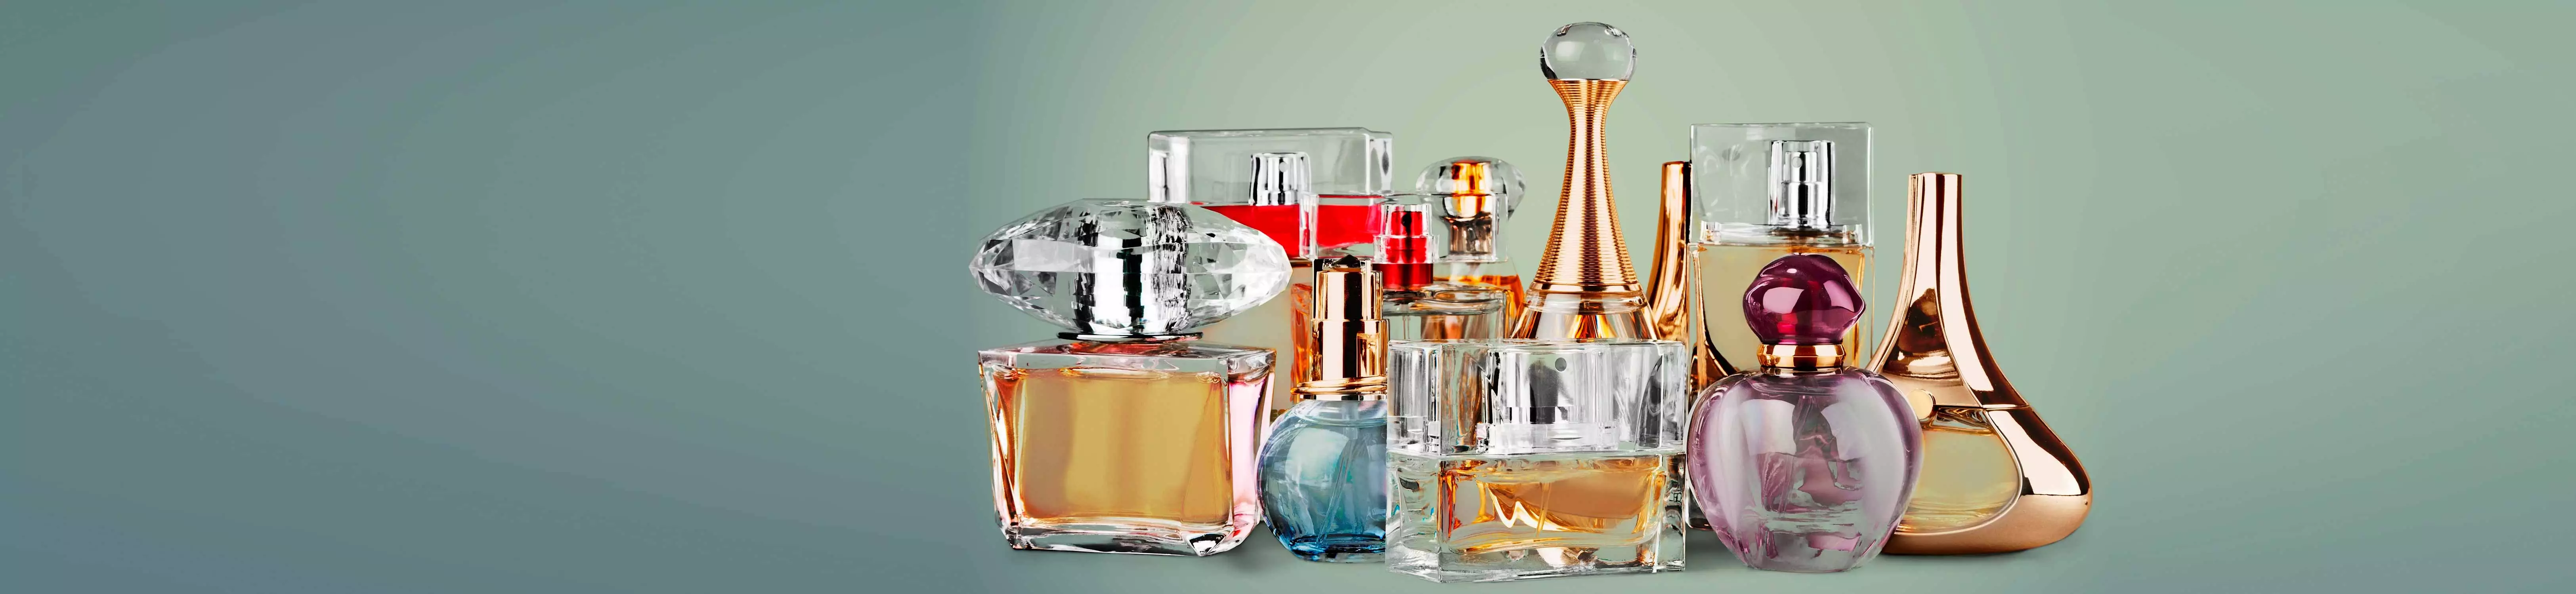 Perfumería y Fragancias